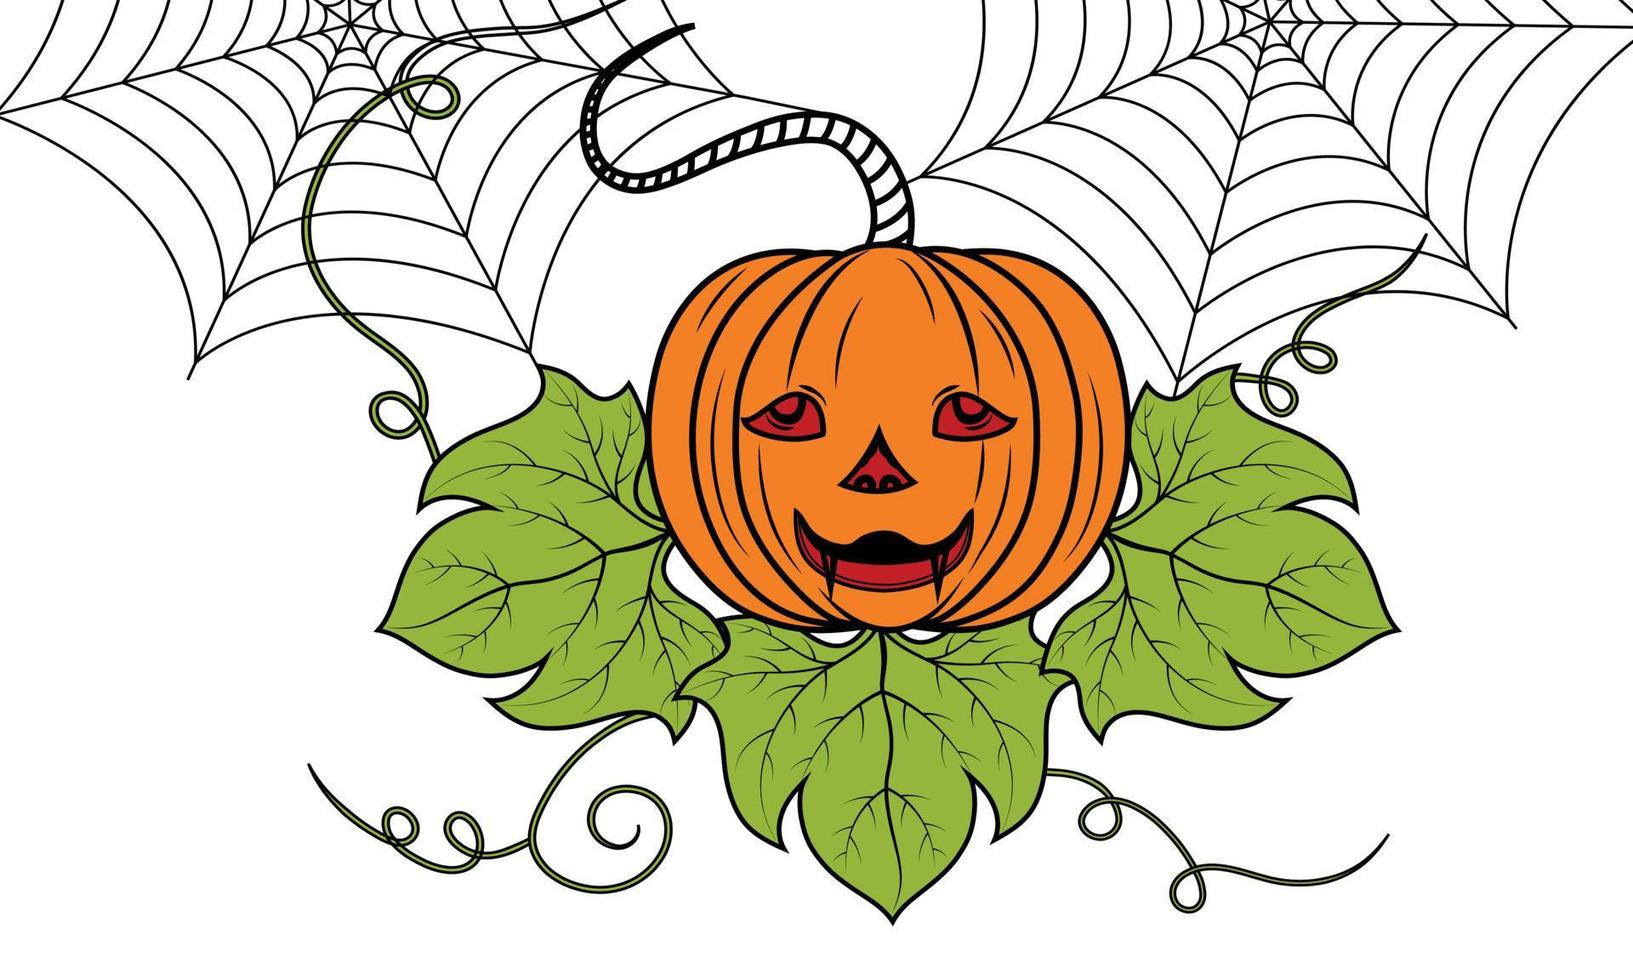 Kürbis Halloween Malvorlagen. Kürbis-Vektor-Illustration. hand gezeichneter kürbis für malbuchvektor vektor